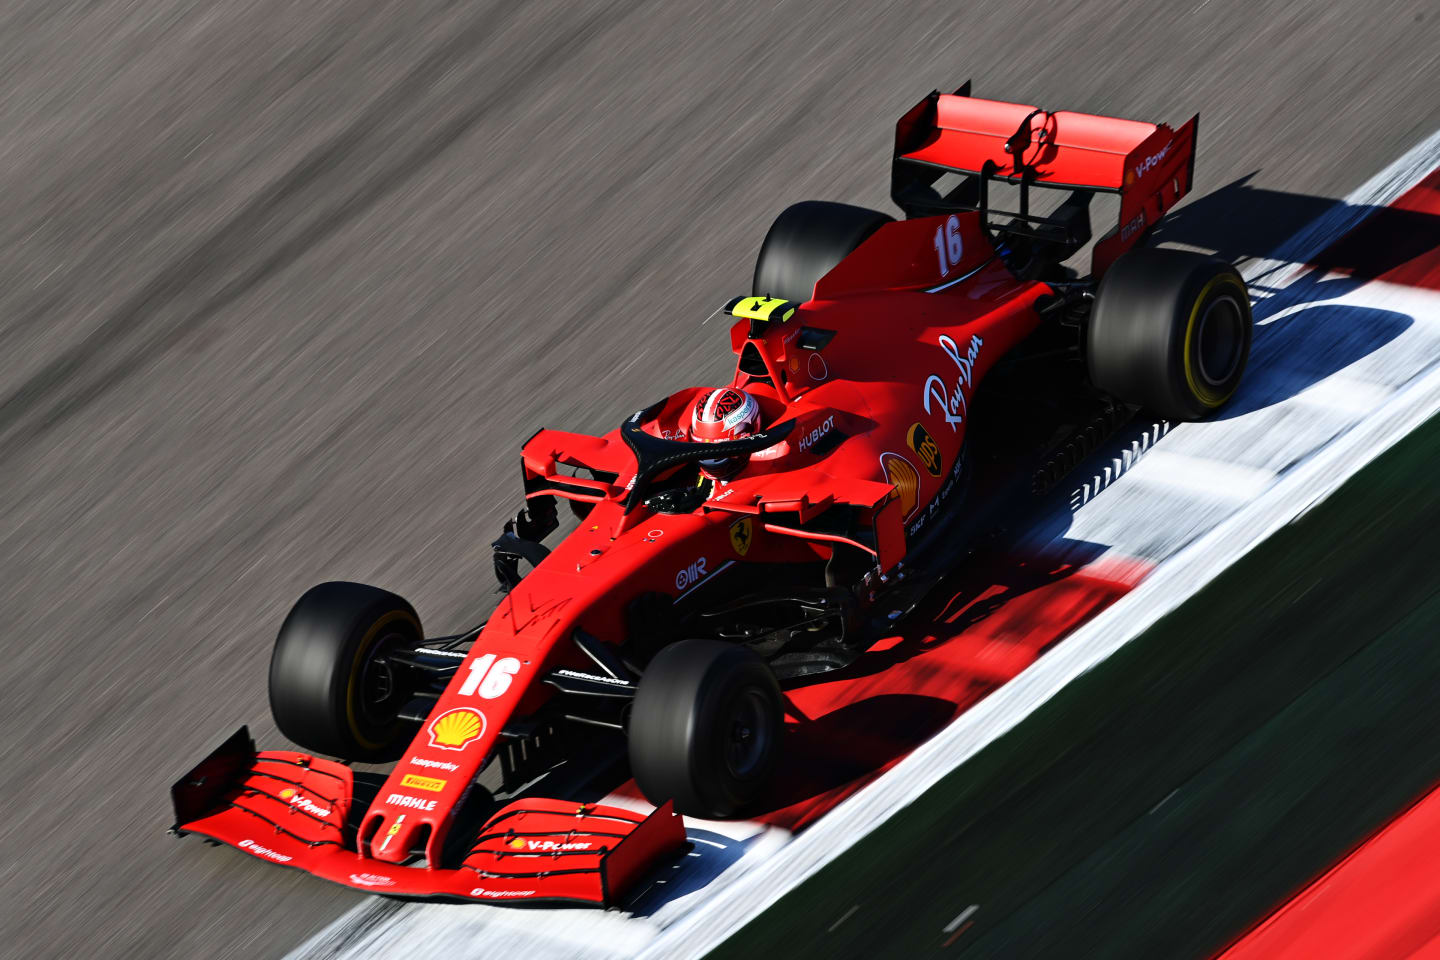 SOCHI, RUSSIA - SEPTEMBER 27: Charles Leclerc of Monaco driving the (16) Scuderia Ferrari SF1000